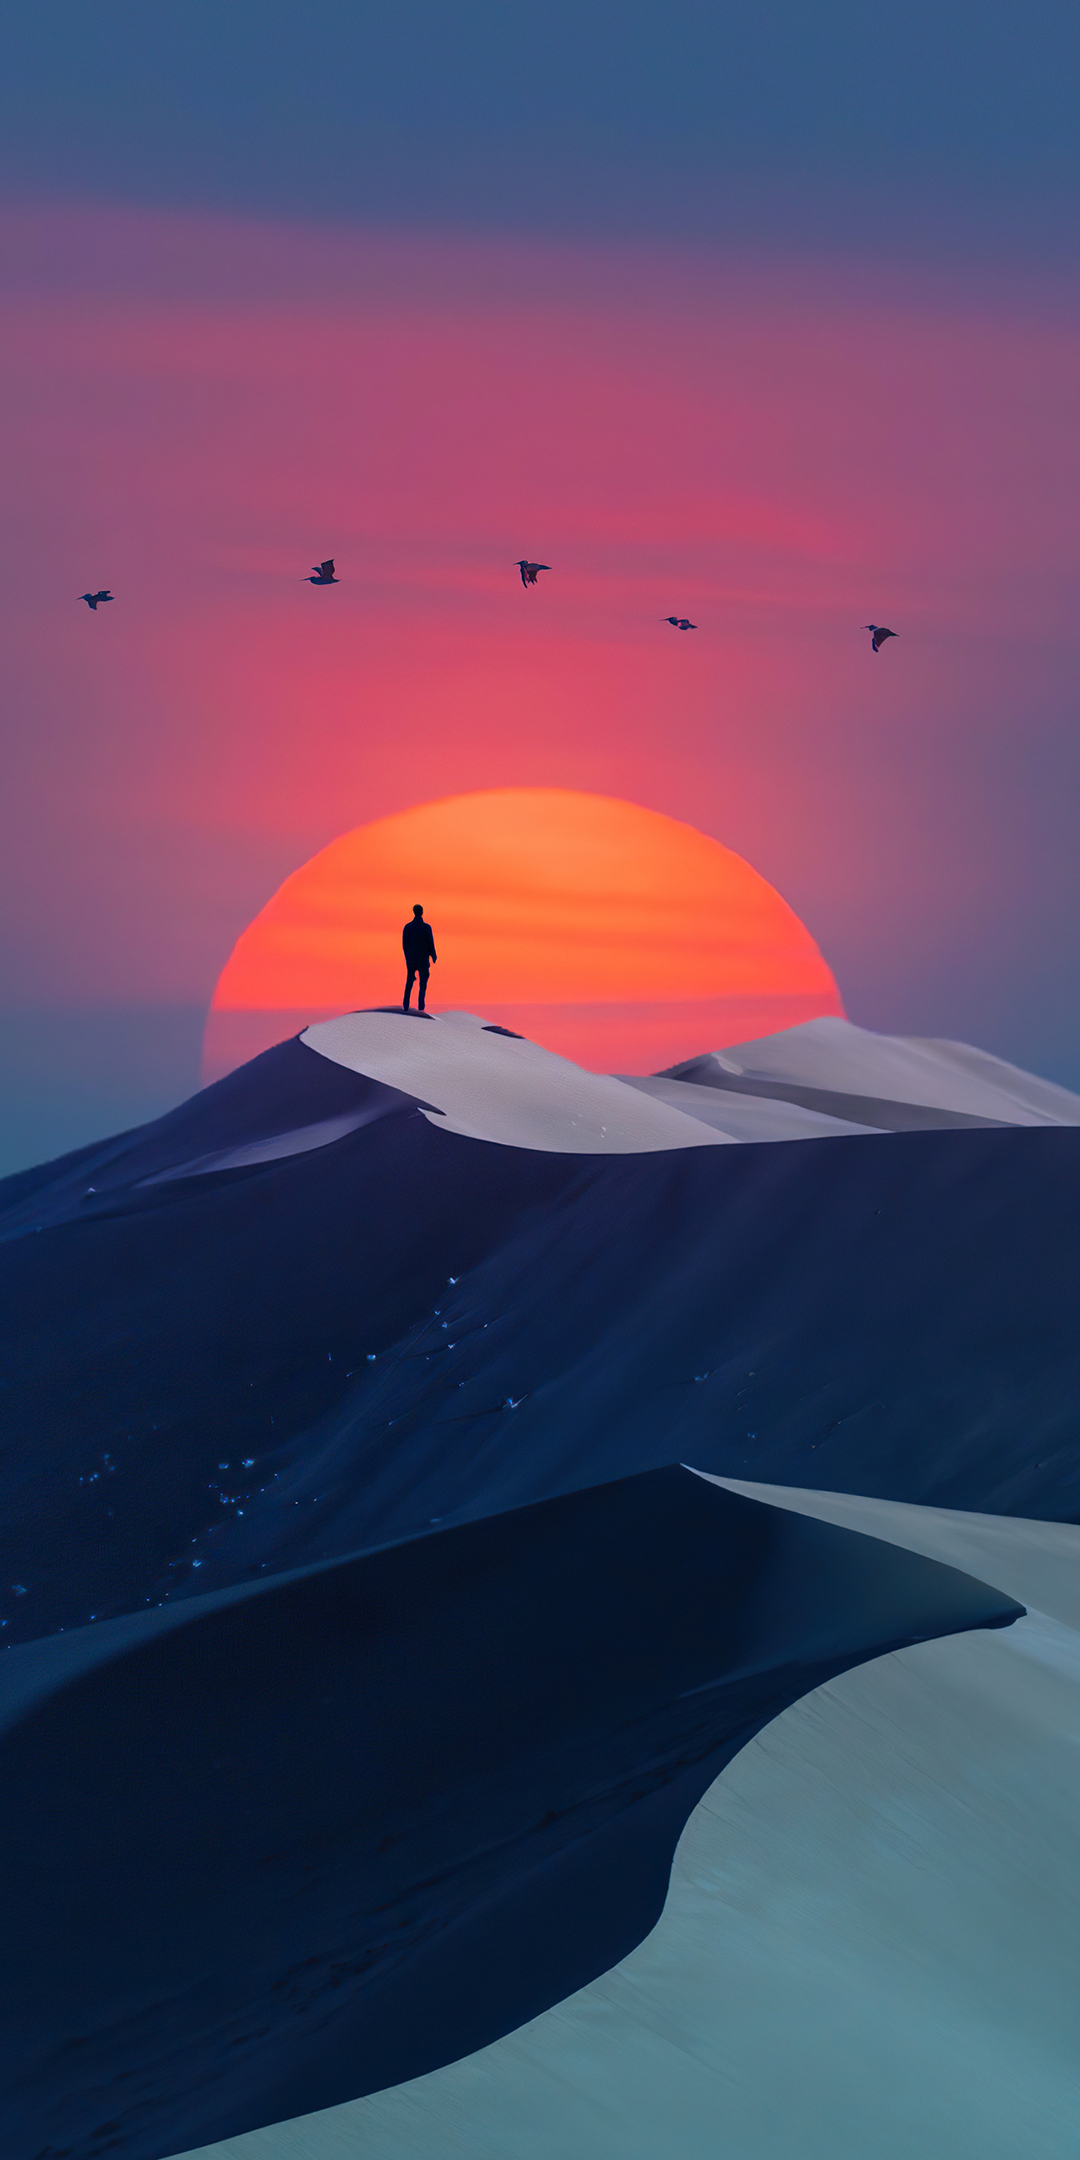 Birds over desert, sunset & man, silhouette, minimal art, 1080x2160 wallpaper